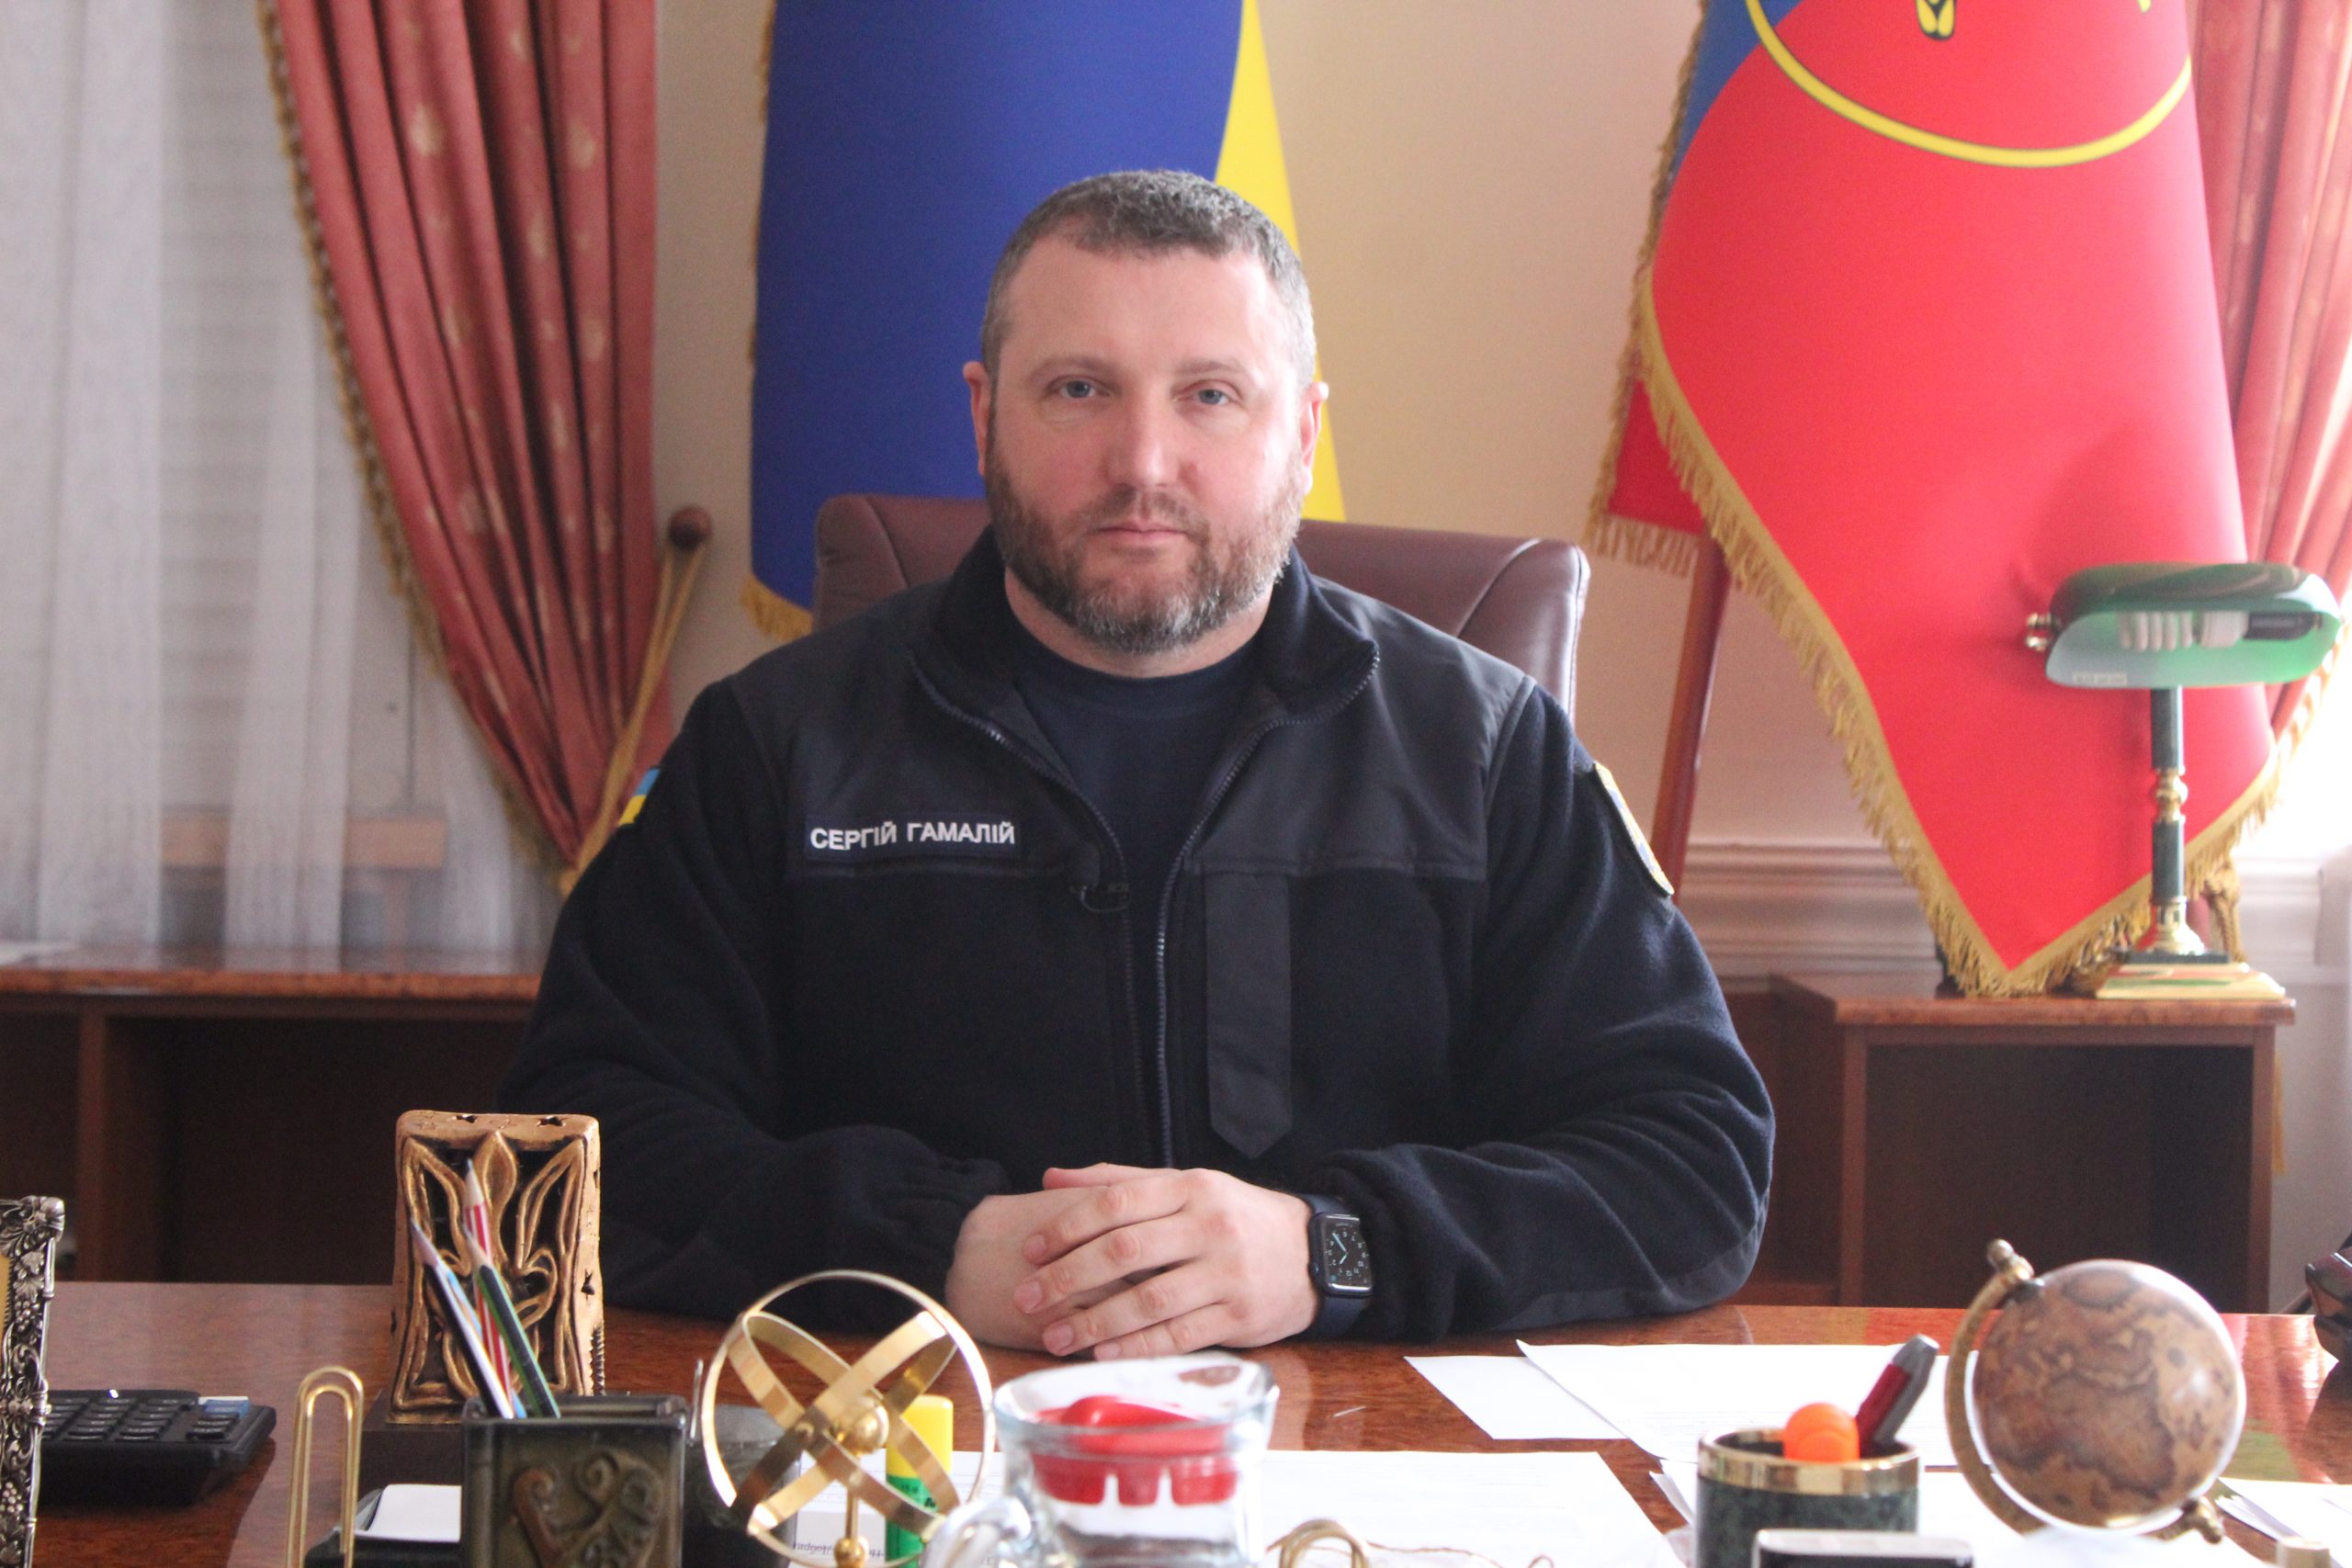 Сергій Гамалій про ситуацію в області станом на 15 квітня